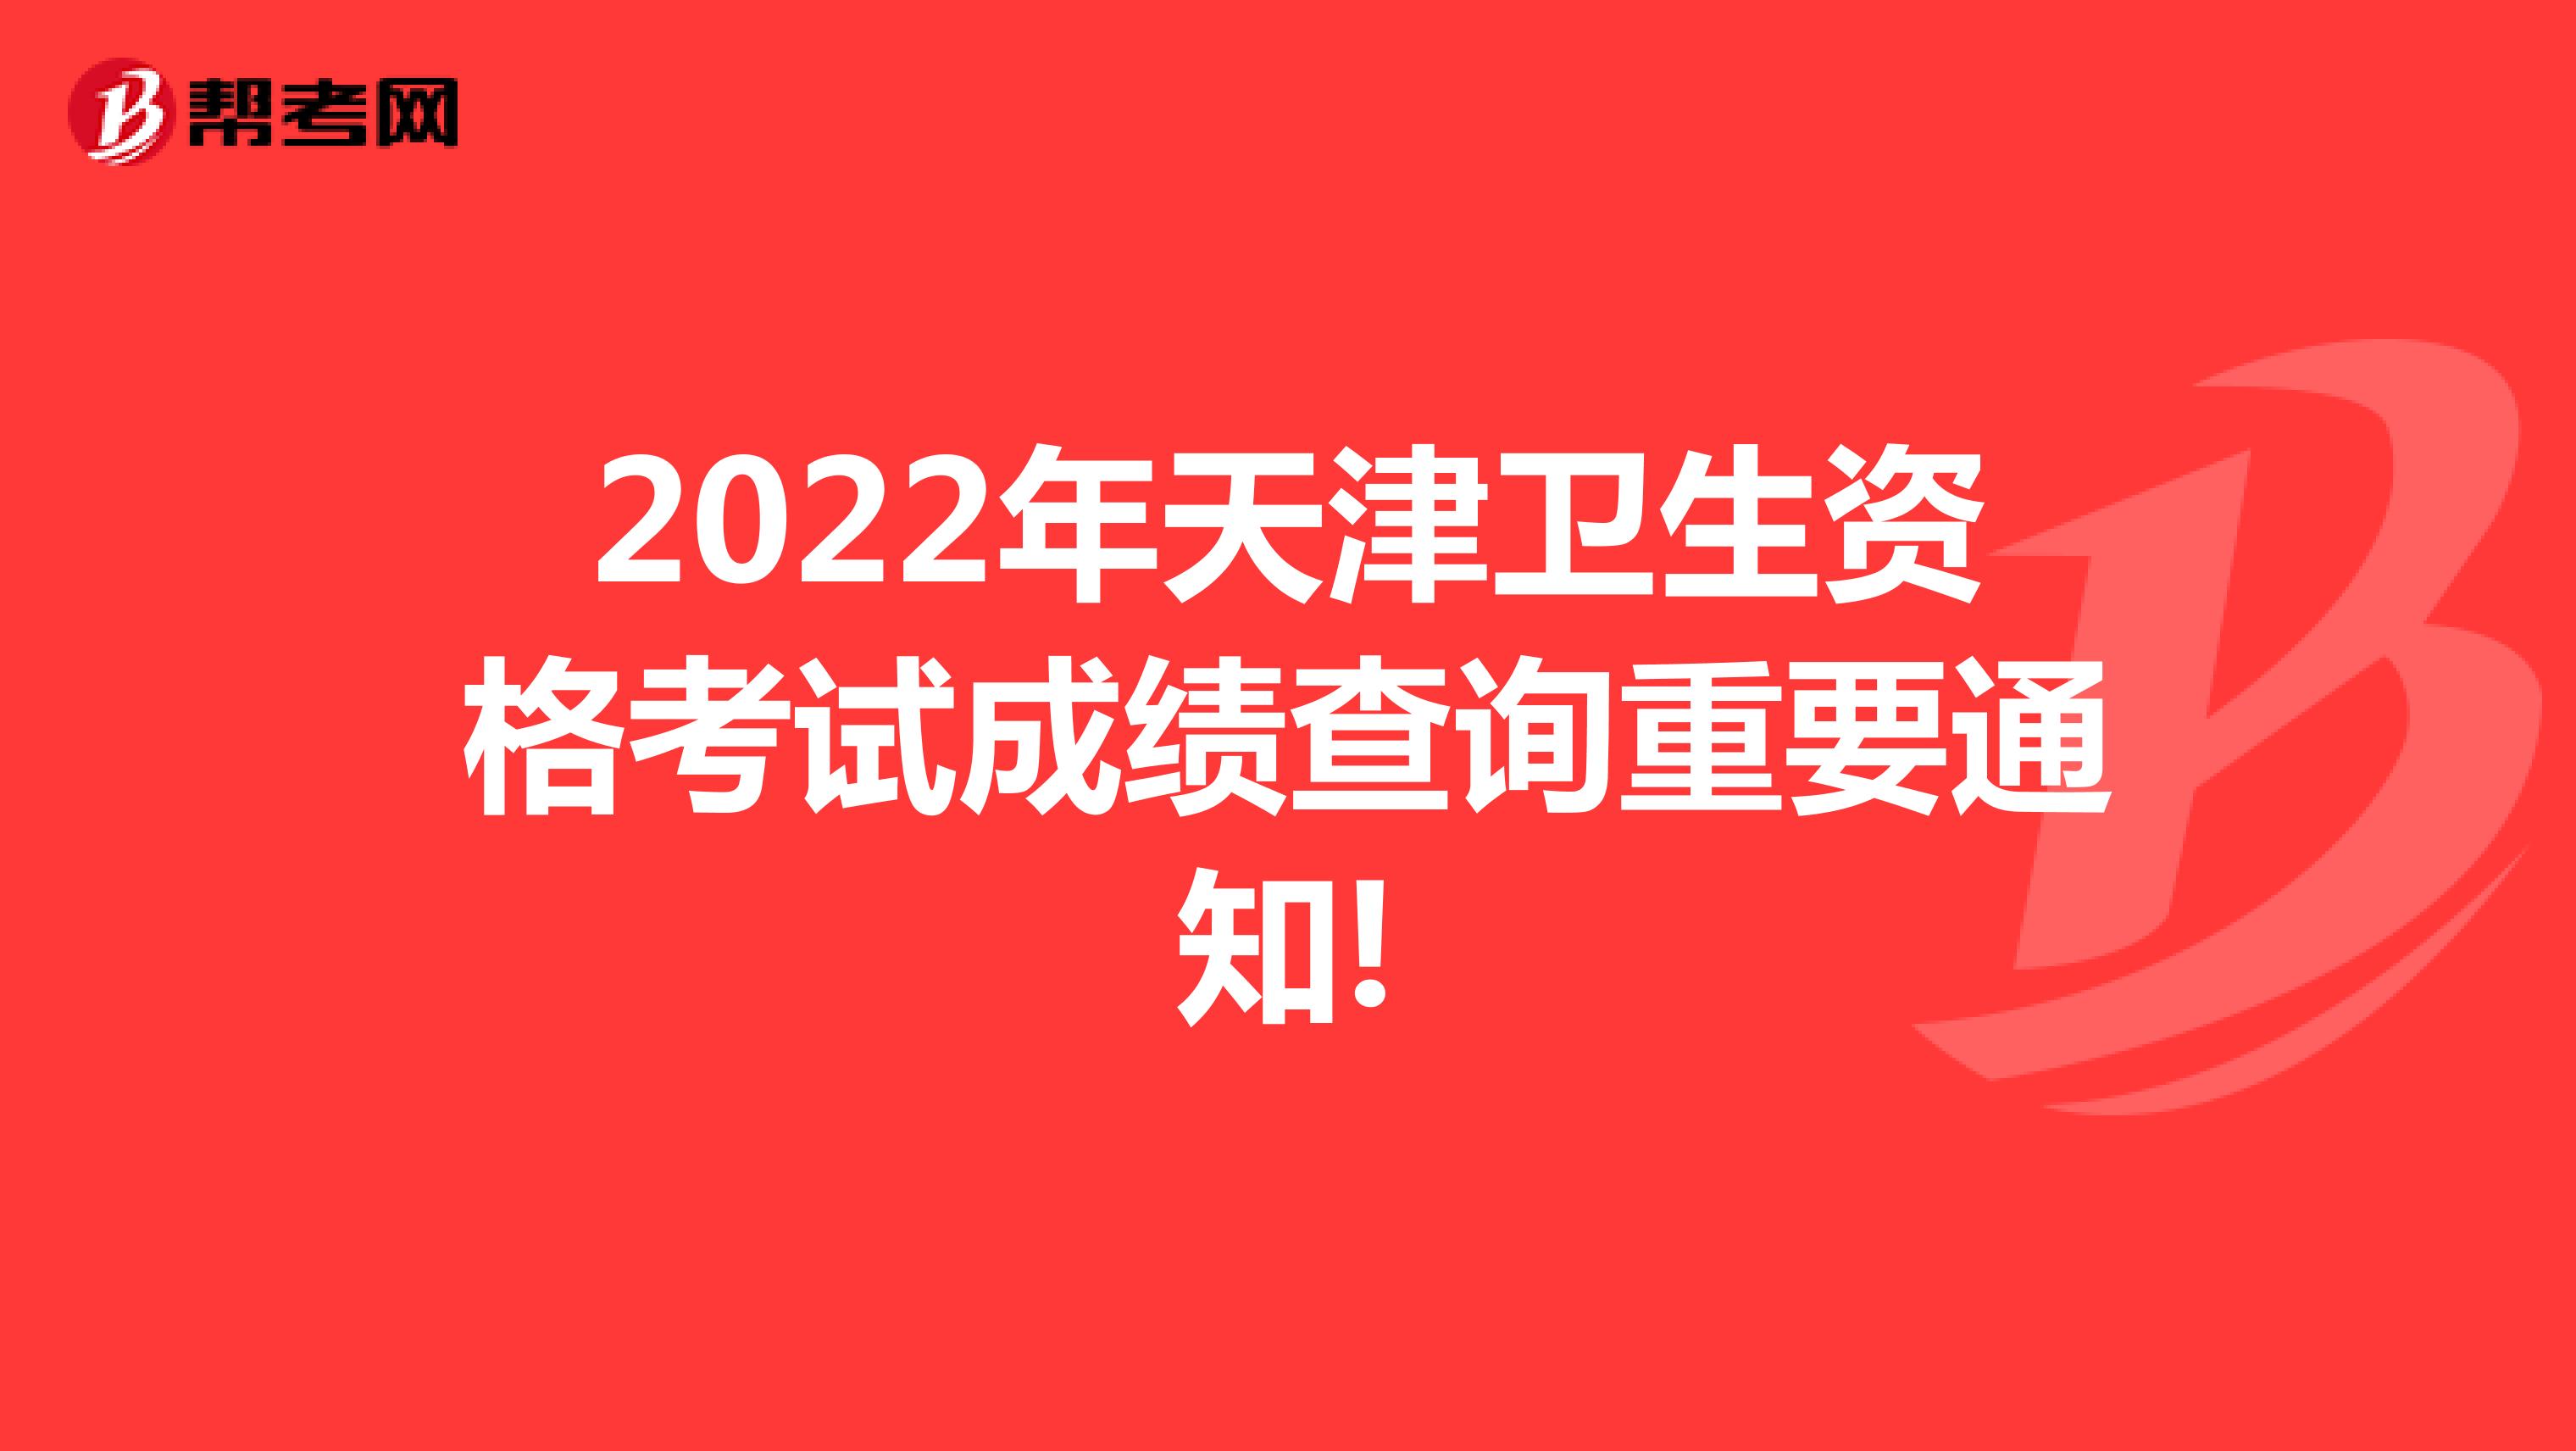 2022年天津卫生资格考试成绩查询重要通知!